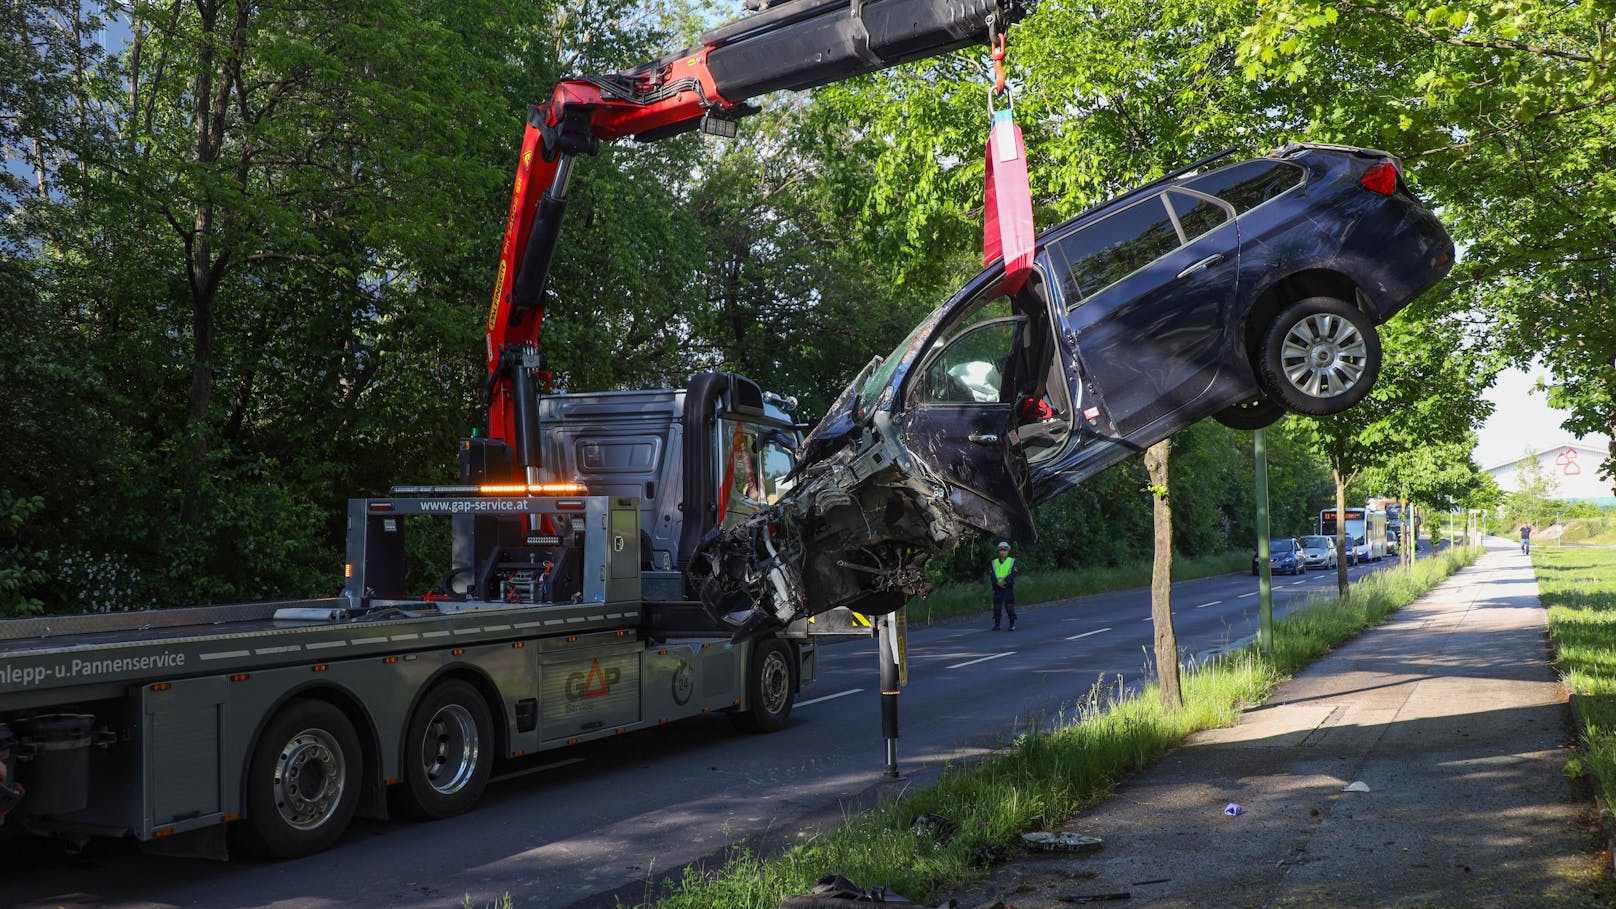 Am Freitagnachmittag ist in Wels- ein Auto von der Straße abgekommen und gegen mehrere Bäume gekracht. Es gab mehrere Verletzte.